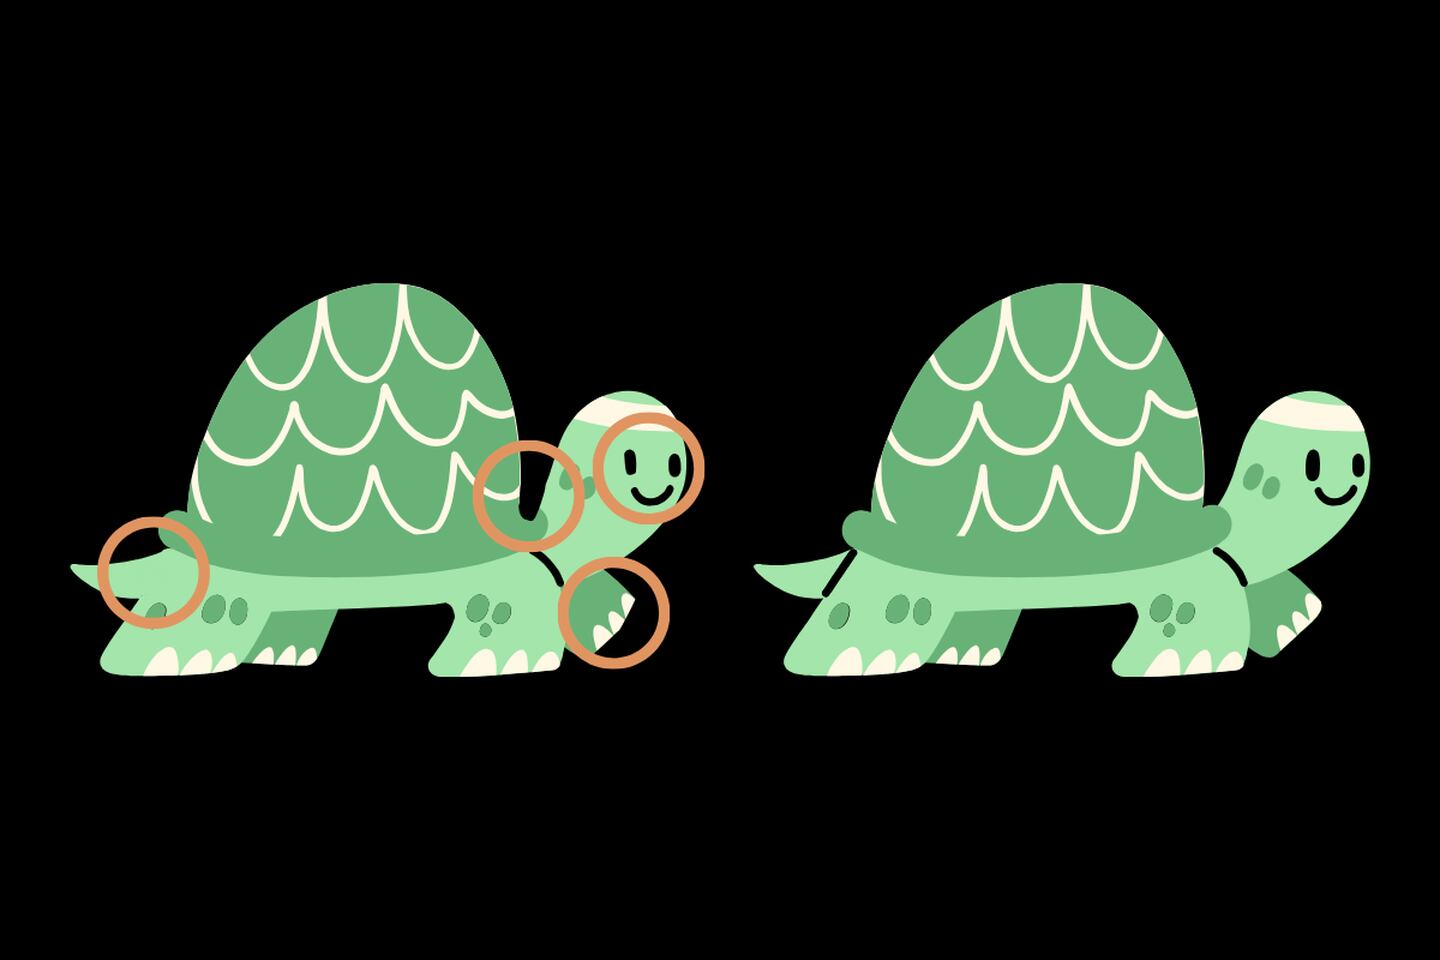 En este test visual se ven dos tortugas que parecen iguales, pero tienen 4 diferencias entre ellas.